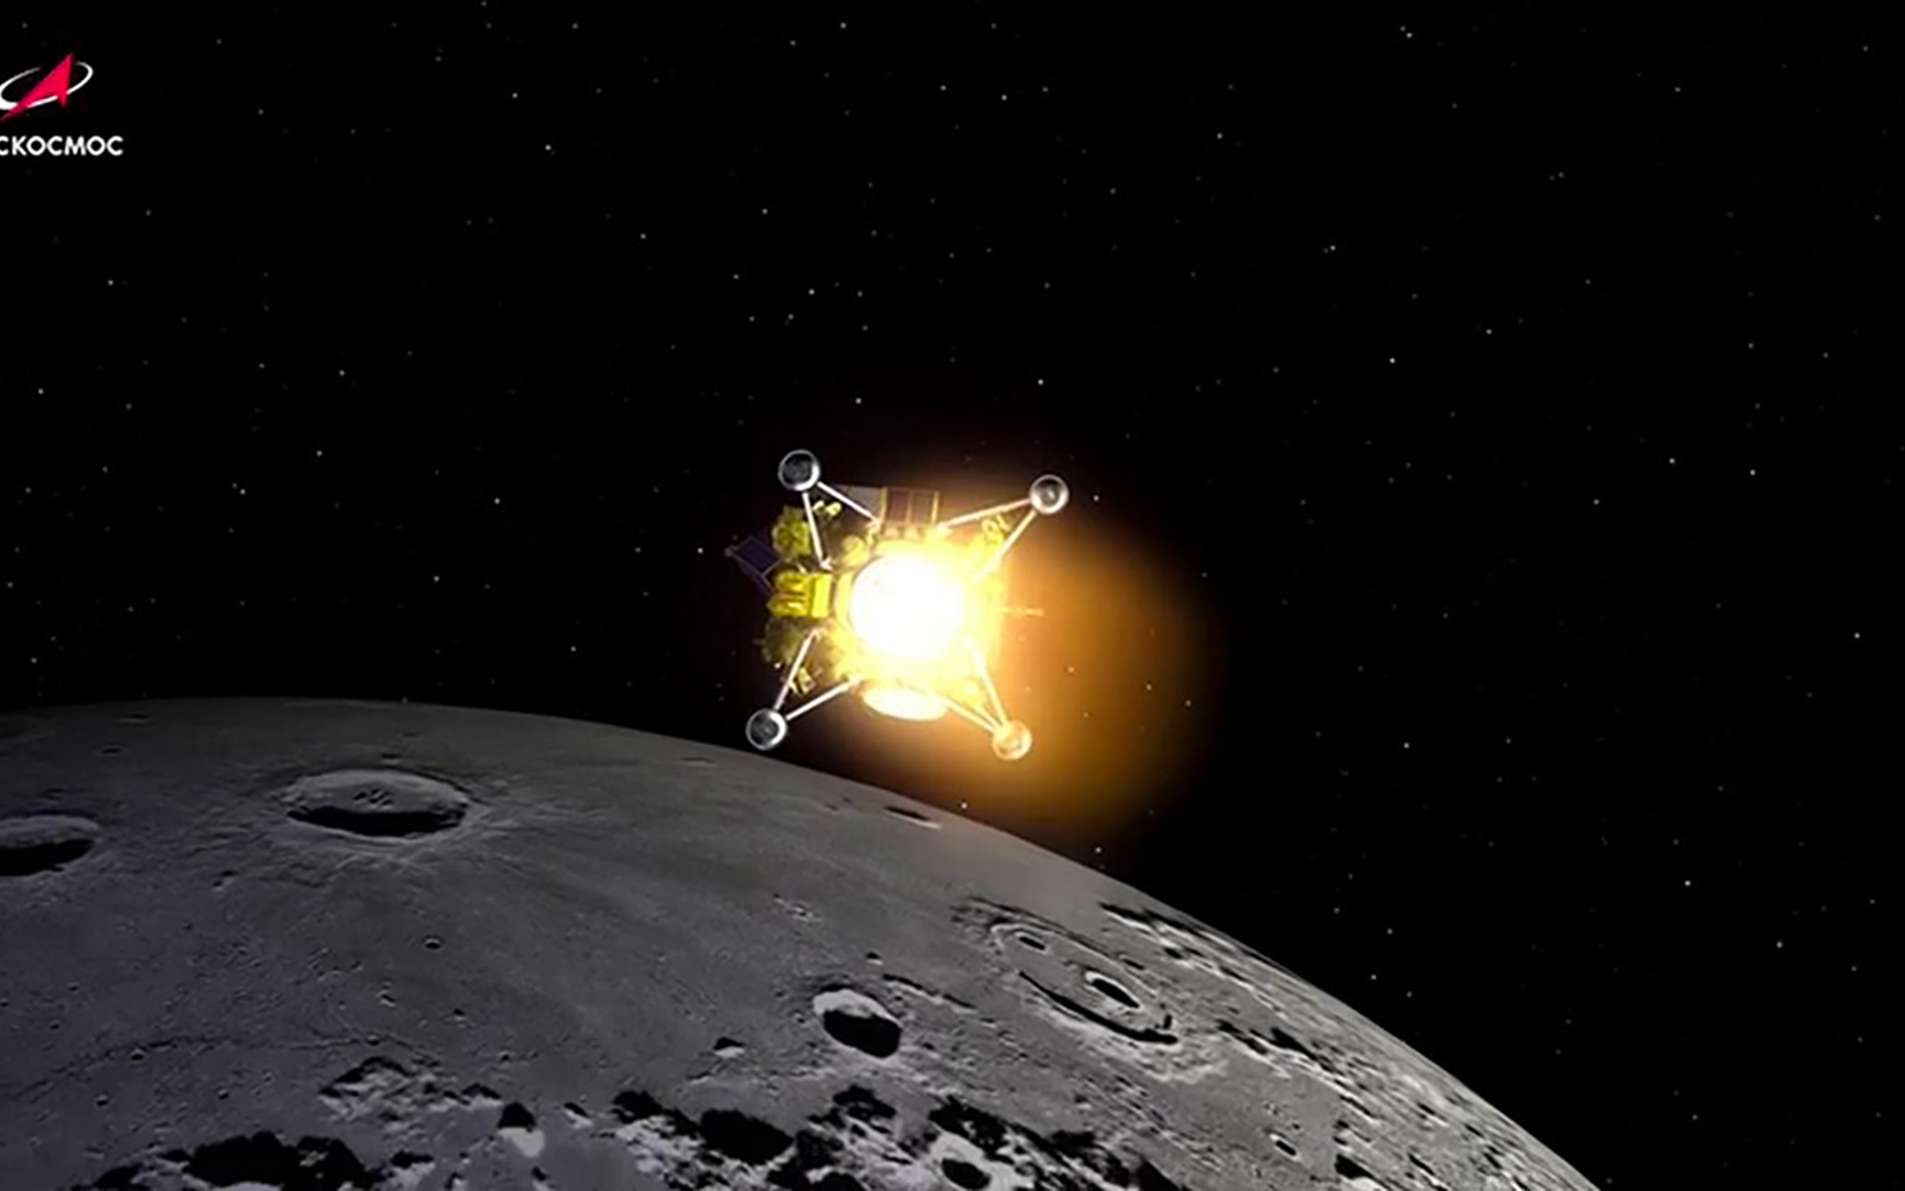 Luna-25 : ce que l'on sait sur le crash de la sonde russe sur la Lune